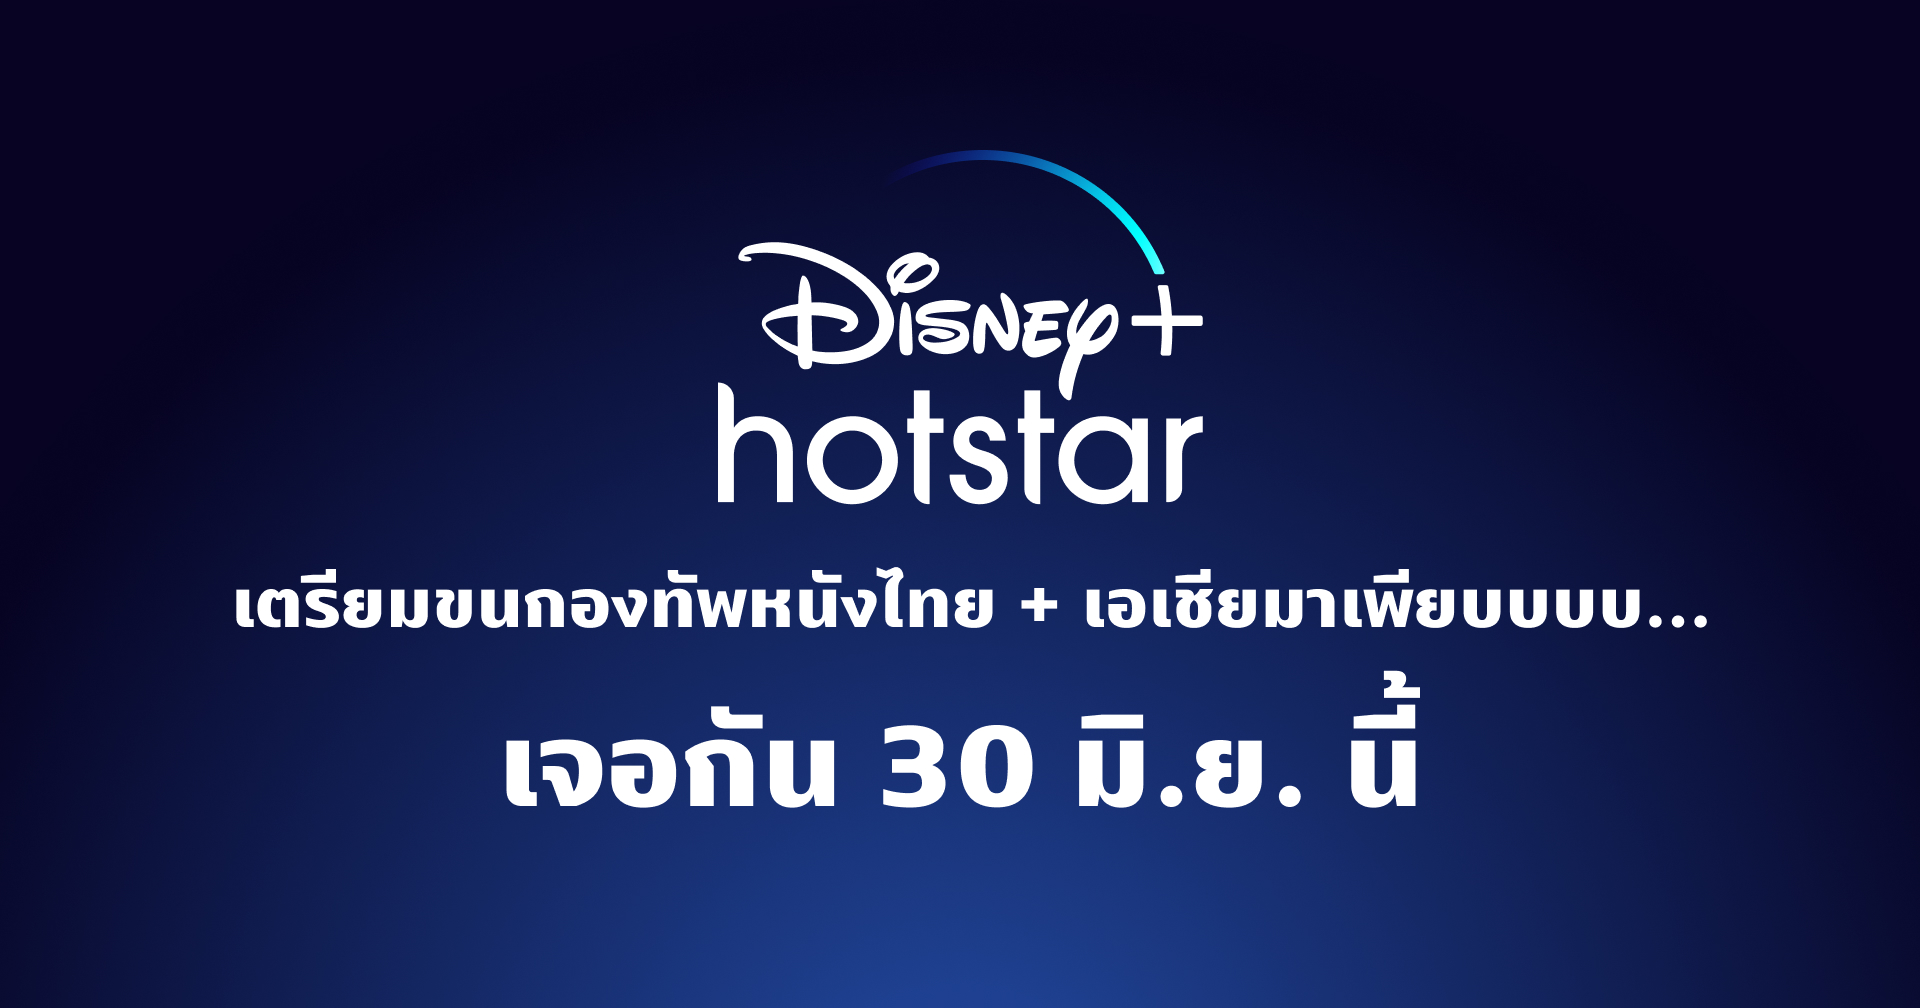 หลุด!! Disney+ Hotstar เตรียมขนทัพหนังไทยและเอเชียลงแพลตฟอร์ม เริ่มสตรีม 30 มิ.ย. นี้